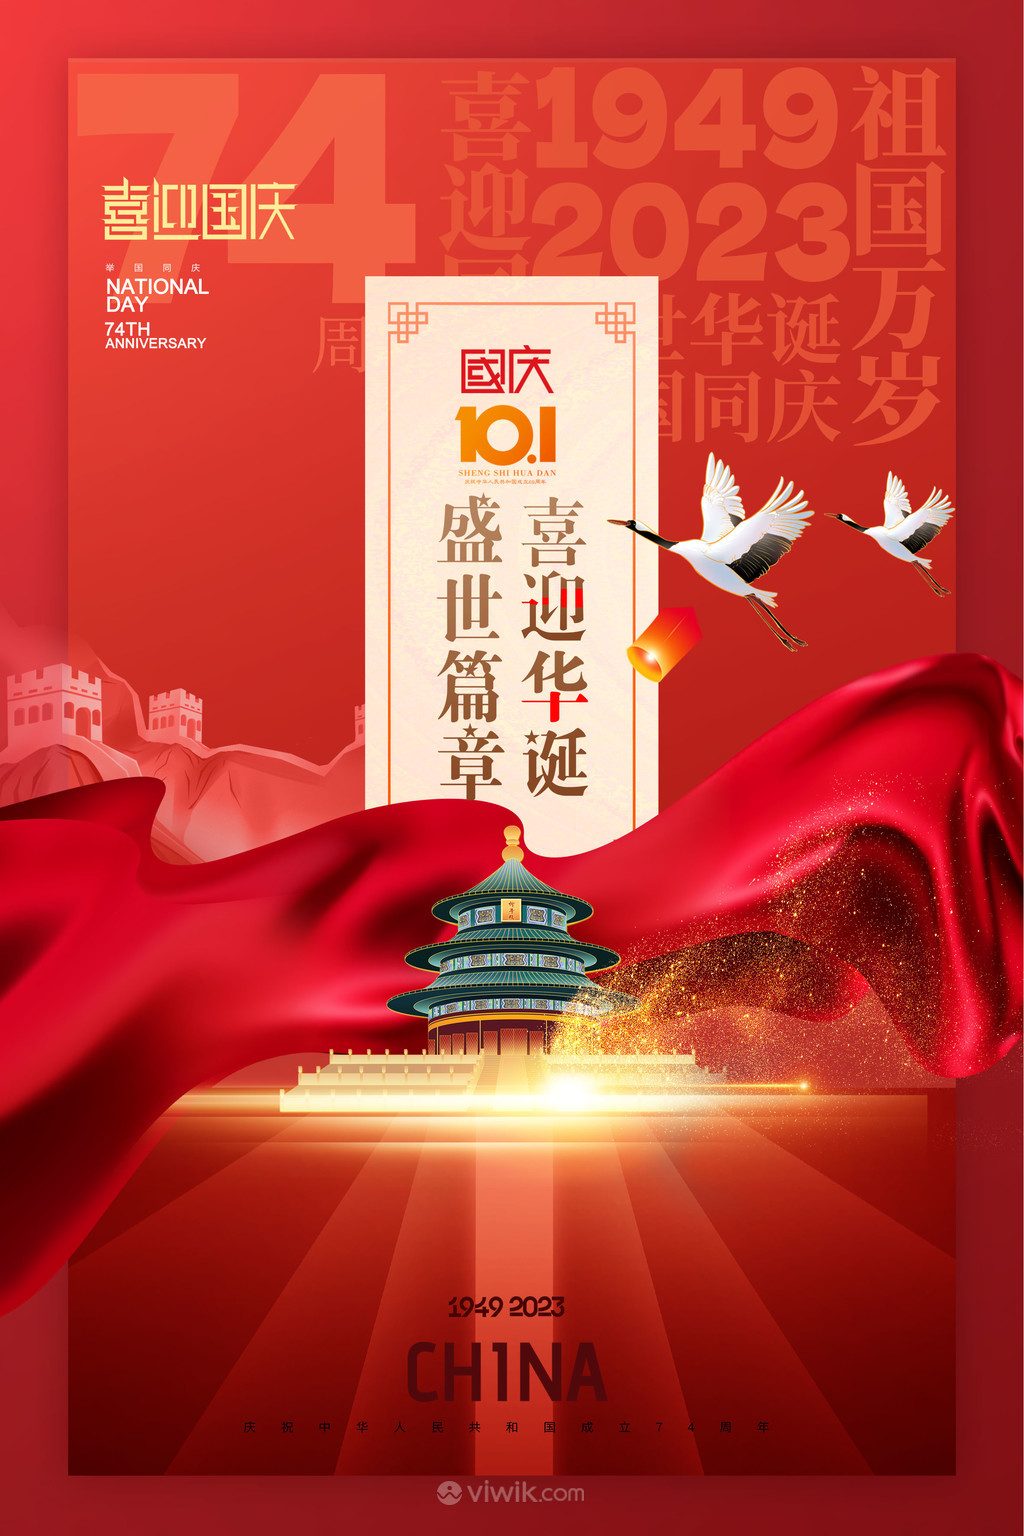 红色绸带喜迎华诞国庆节74周年海报